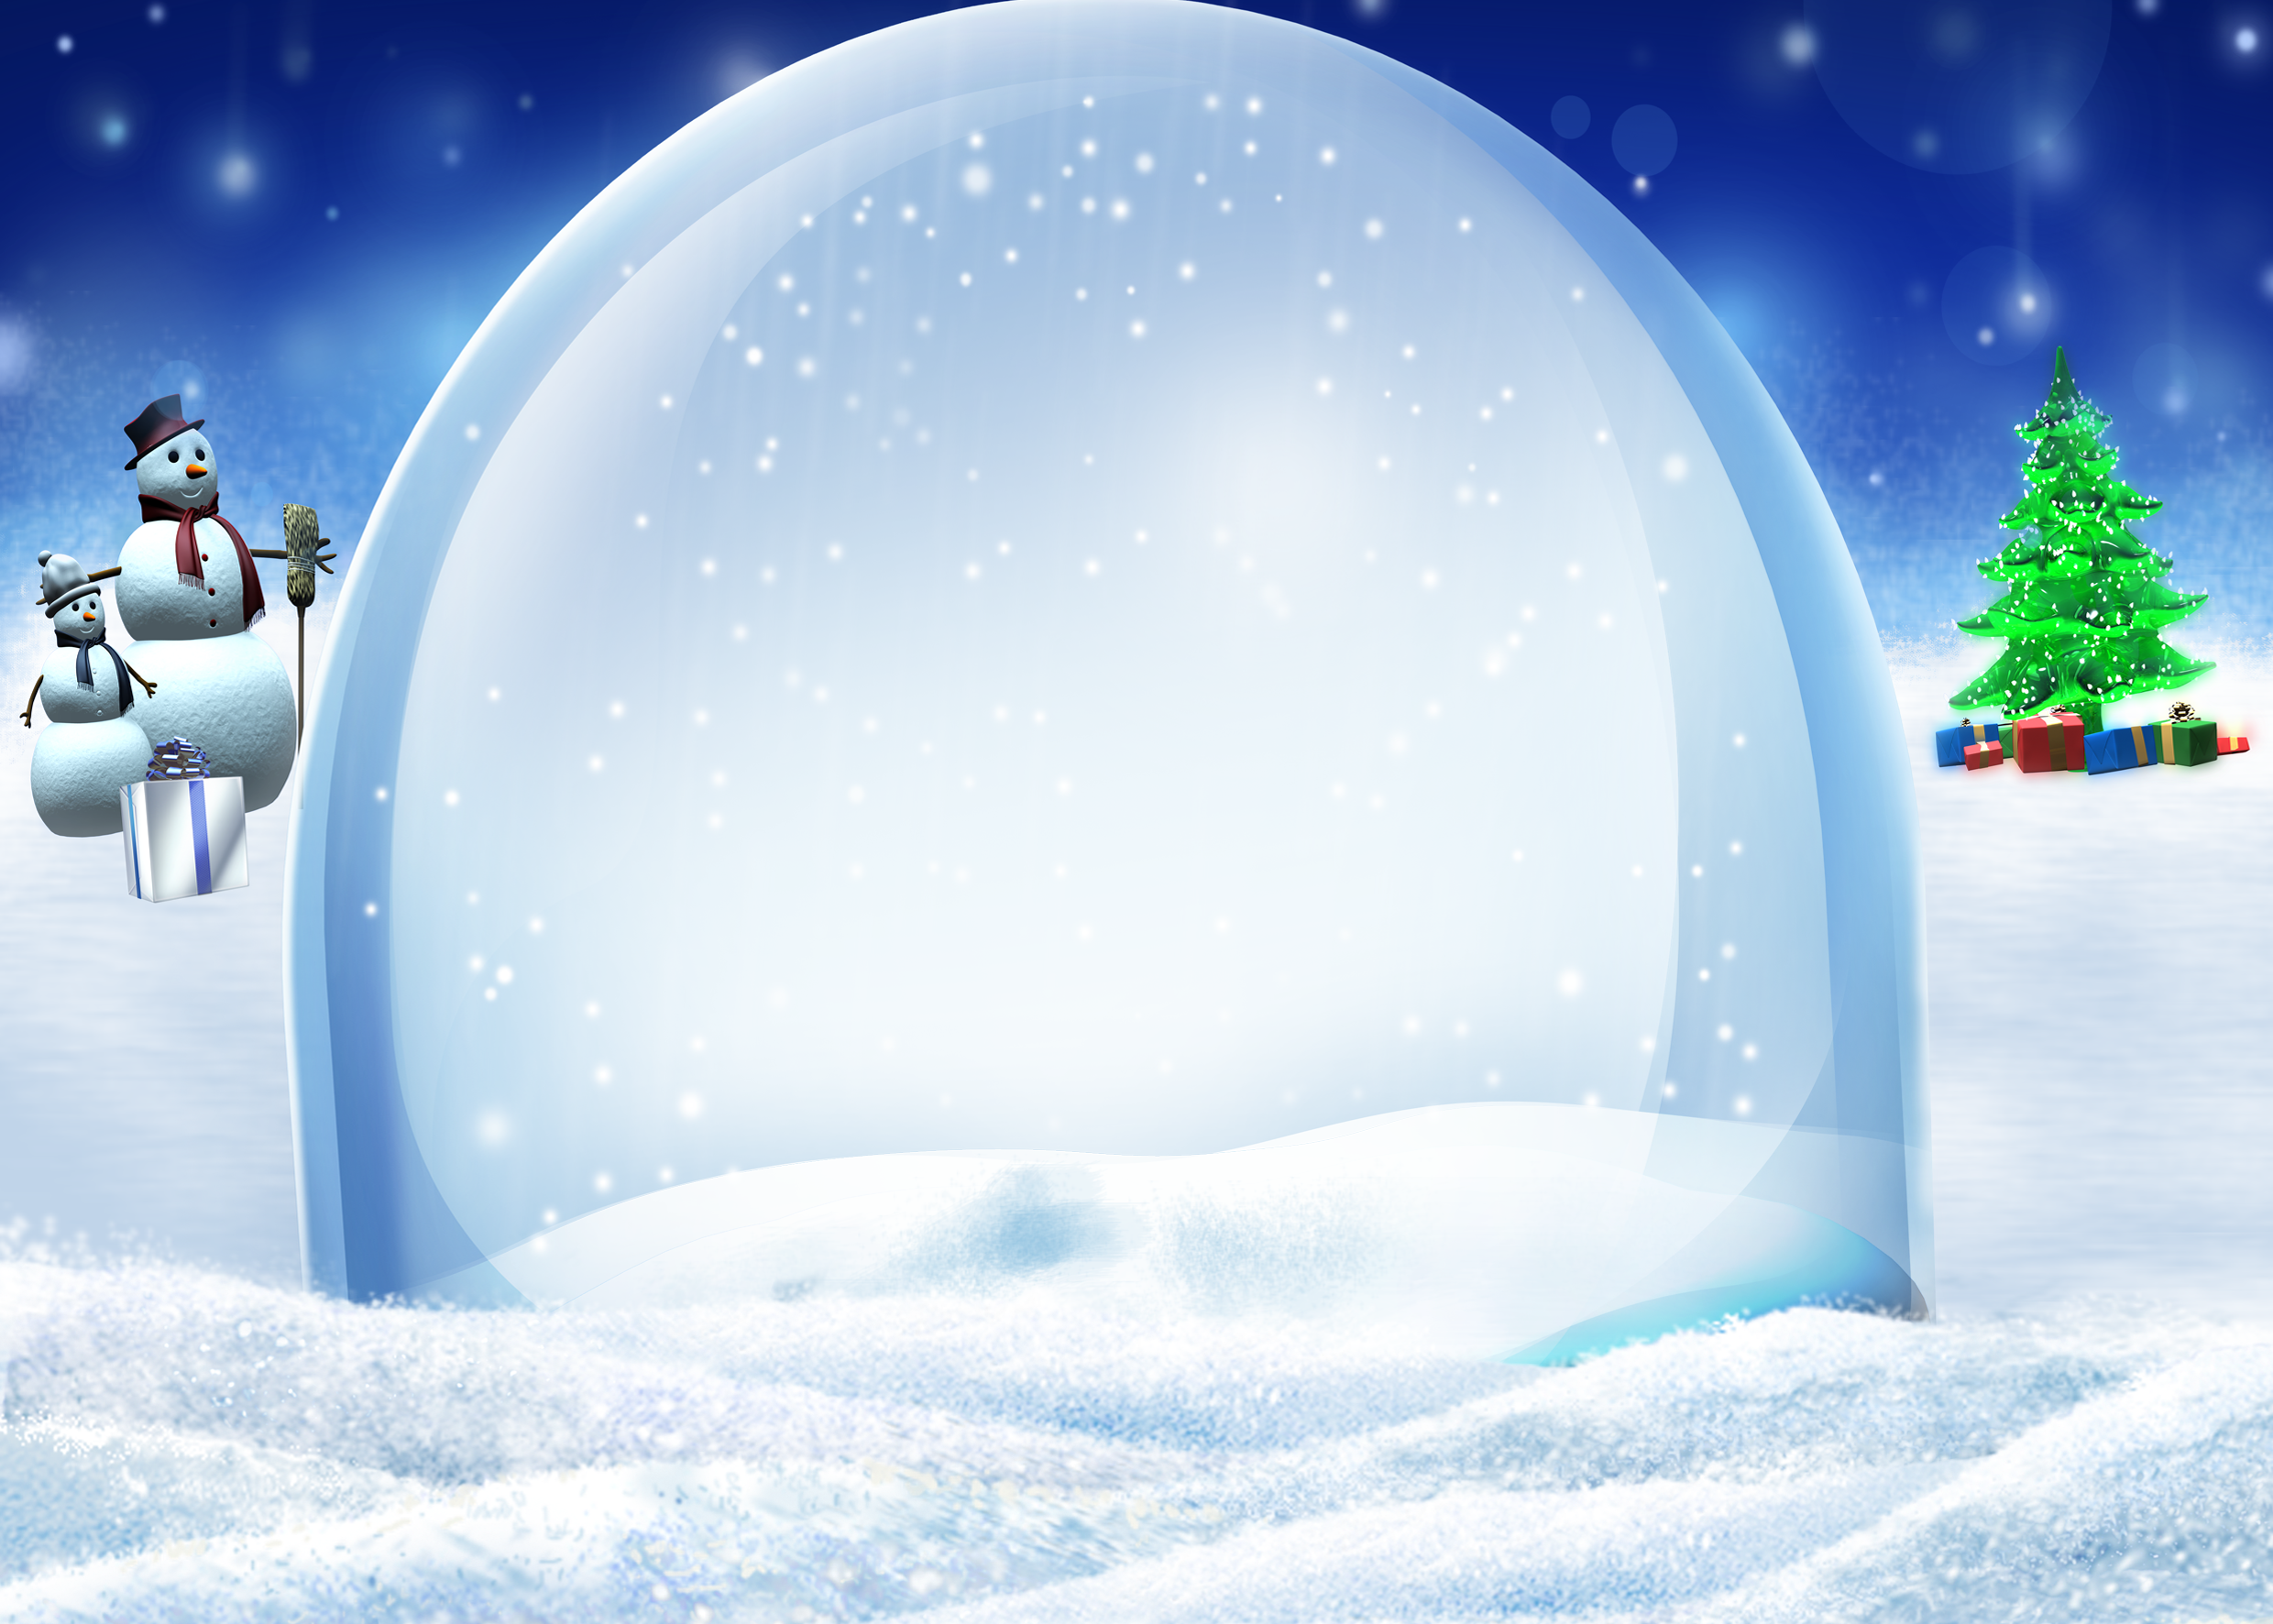 Fondos De Navidad En Psd Clipart (2480x1772), Png Download